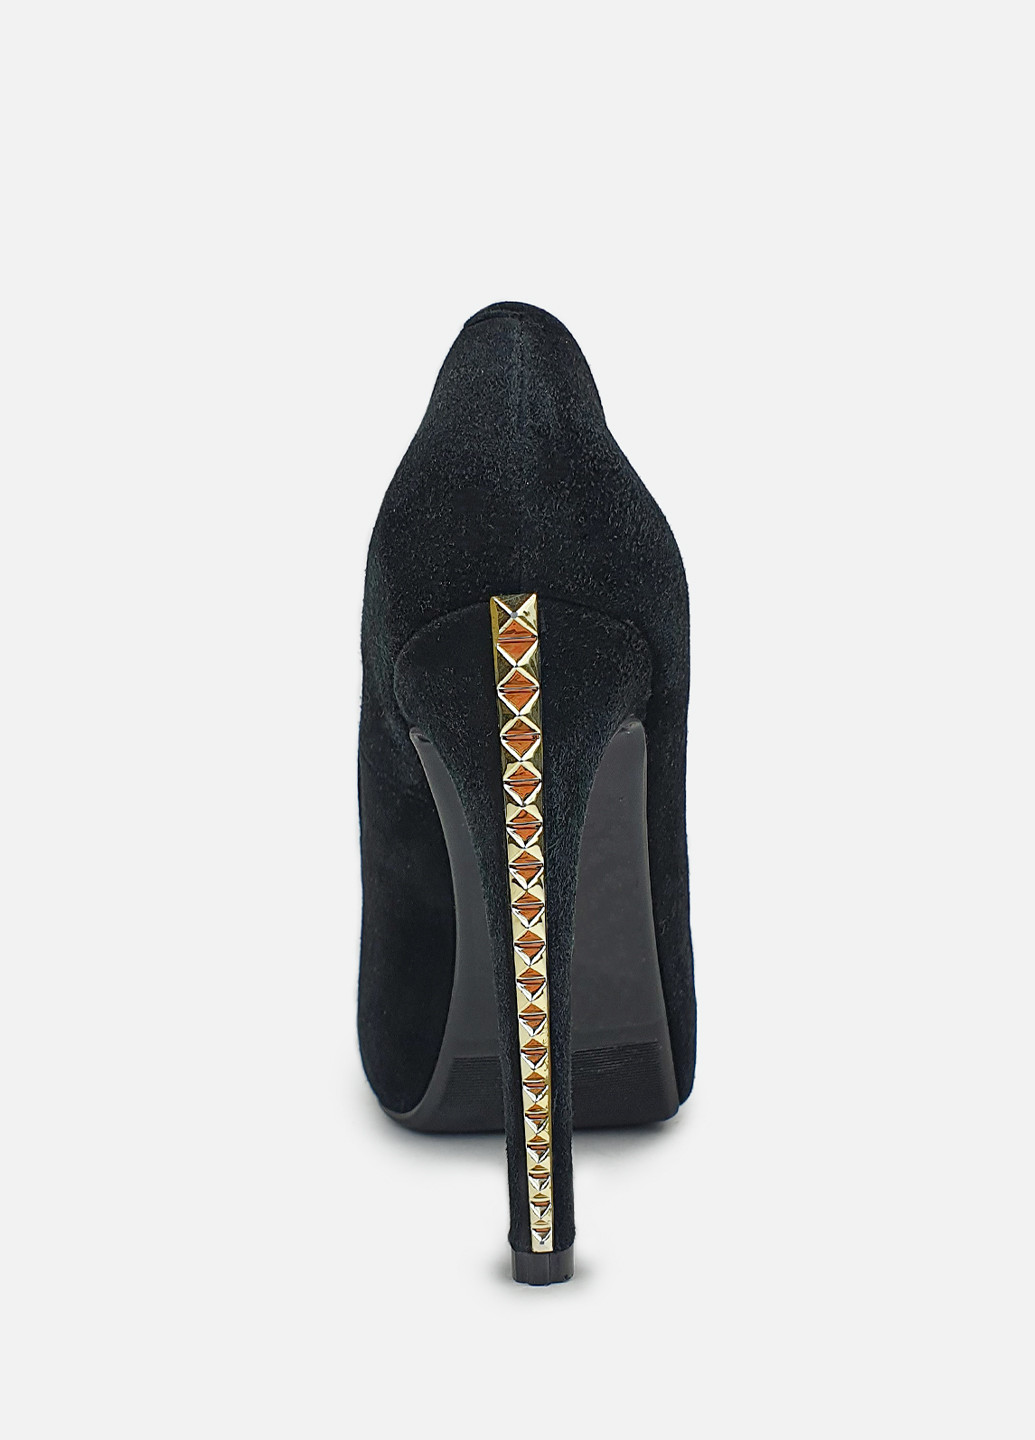 Туфлі жіночі з шипами на високому каблуці чорні Glossi лодочки (252654843)